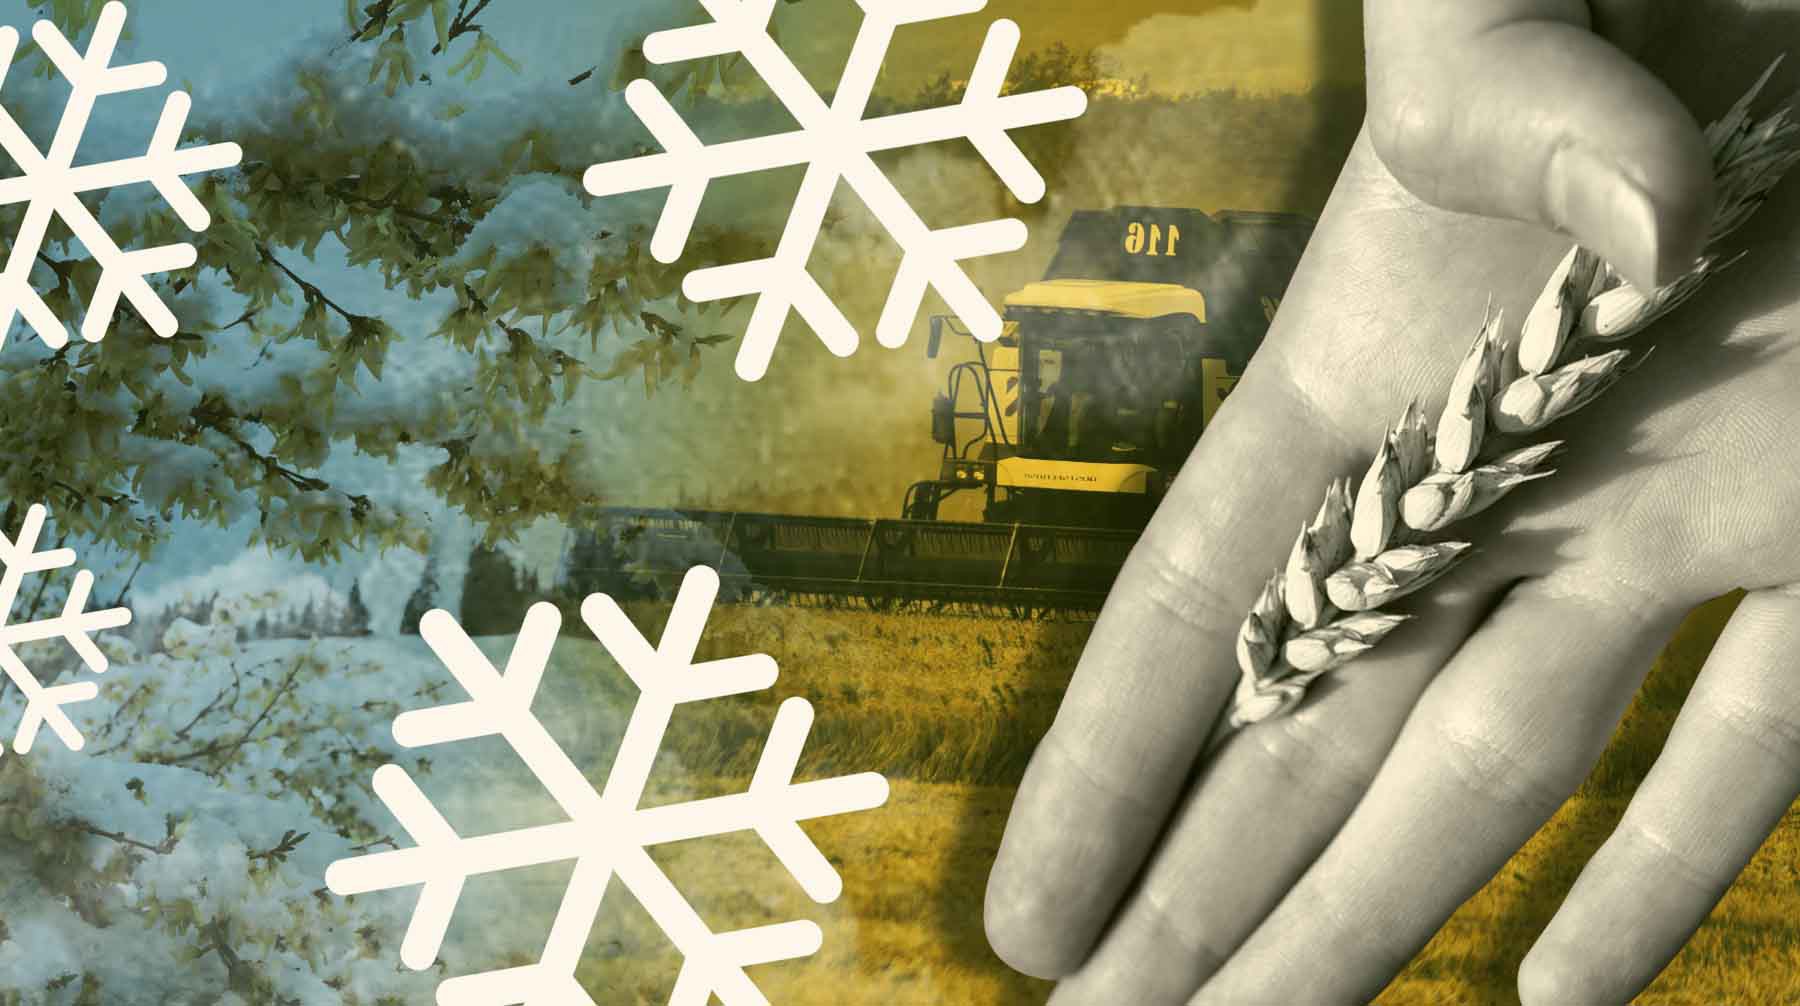 Dailystorm - Глава Минсельхоза Кубани сообщил, что из-за заморозков глобально ничего из посевов не пострадало